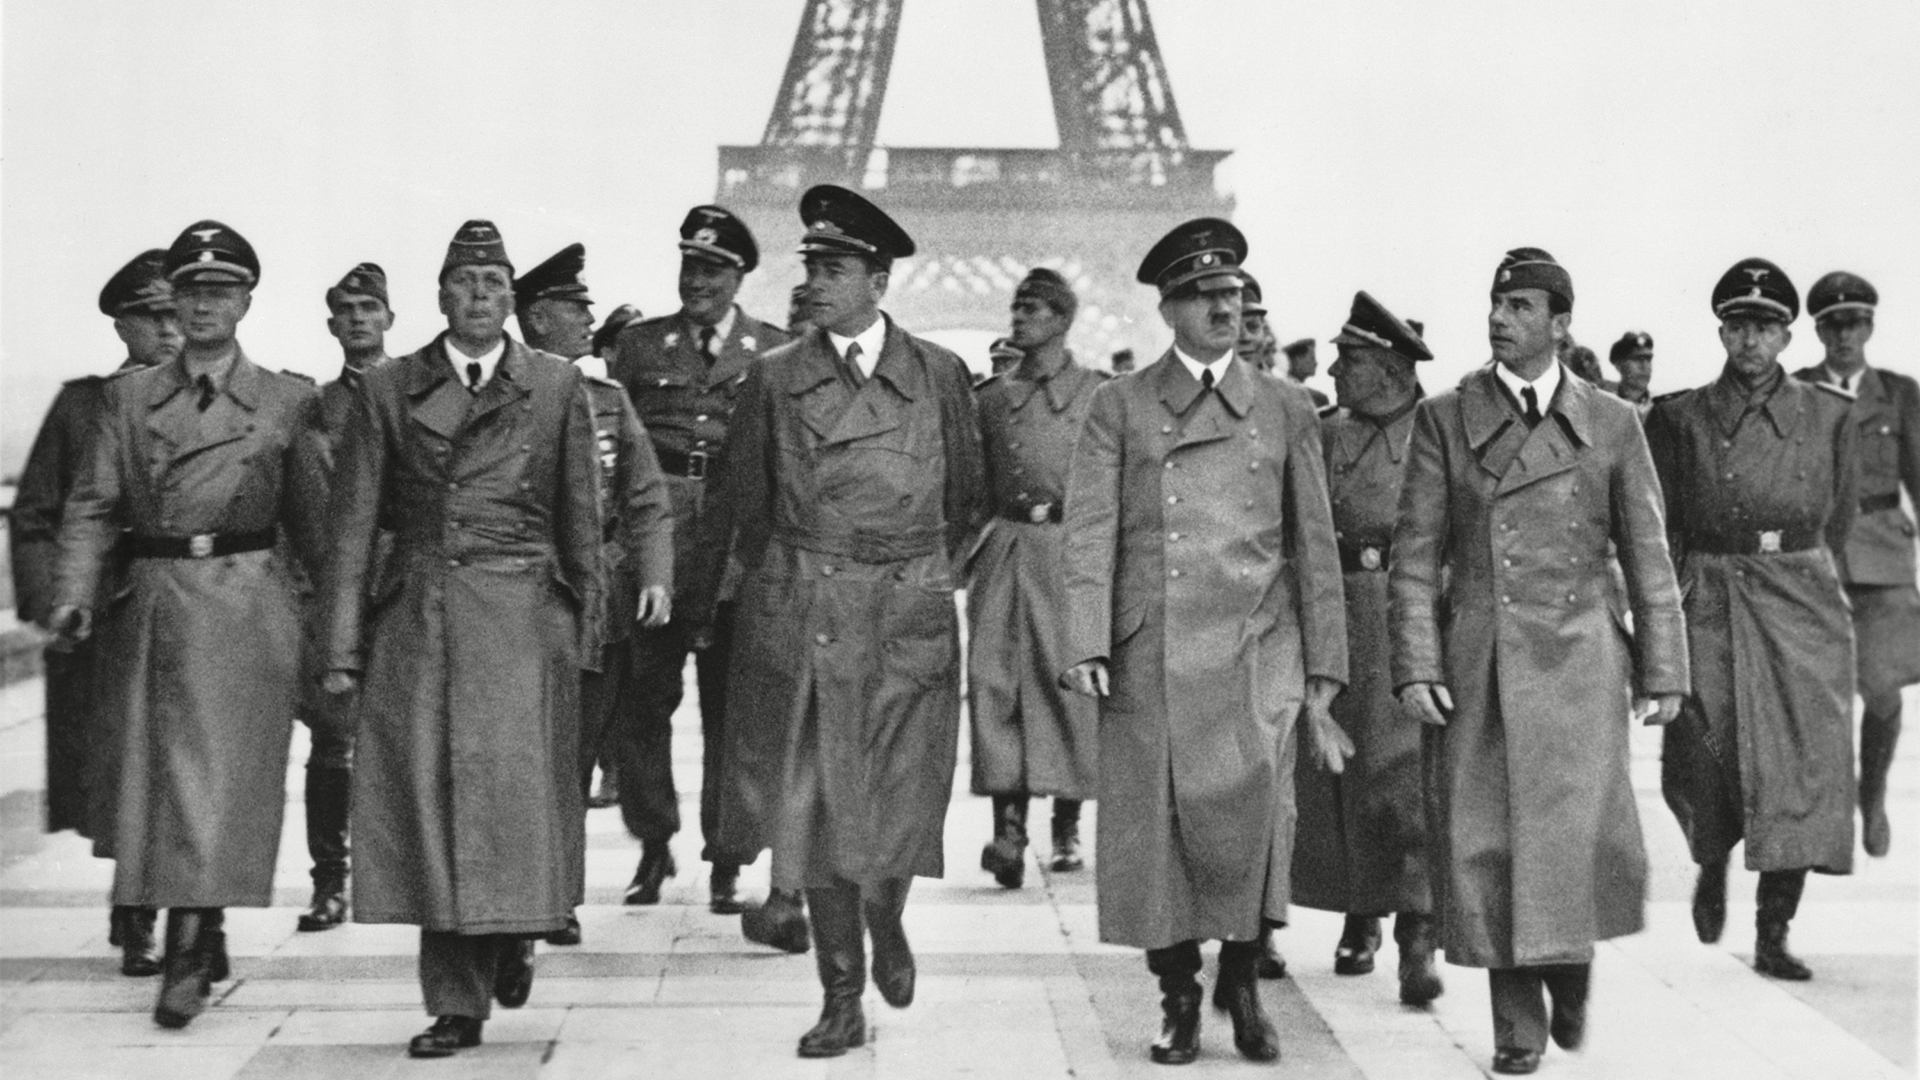 Adolf Hitler rodeado por los arquitectos Hermann Giesler y Albert Speer, y el escultor Arno Breker, dan un tour de la conquista en París, el 23 de junio de 1940 (Everett/Shutterstock)